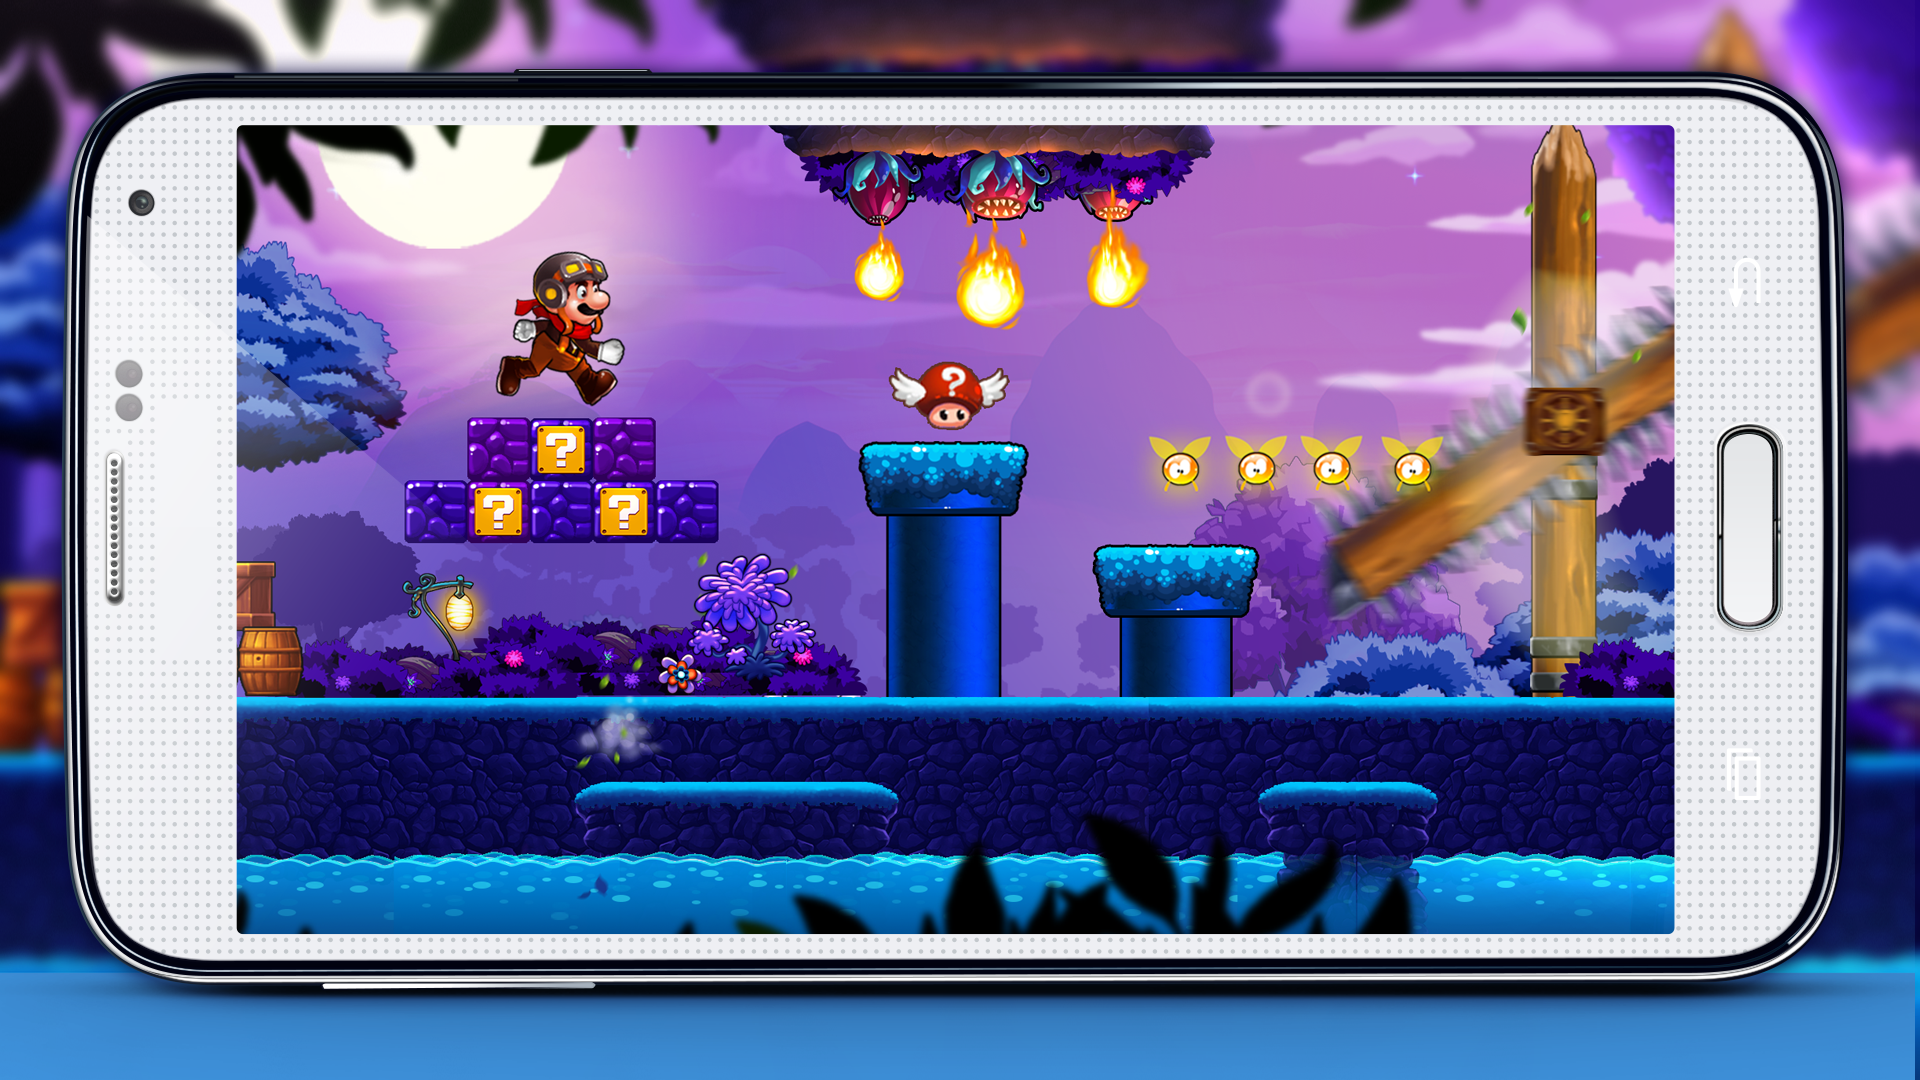 Android application Super Mushroom Boy World screenshort